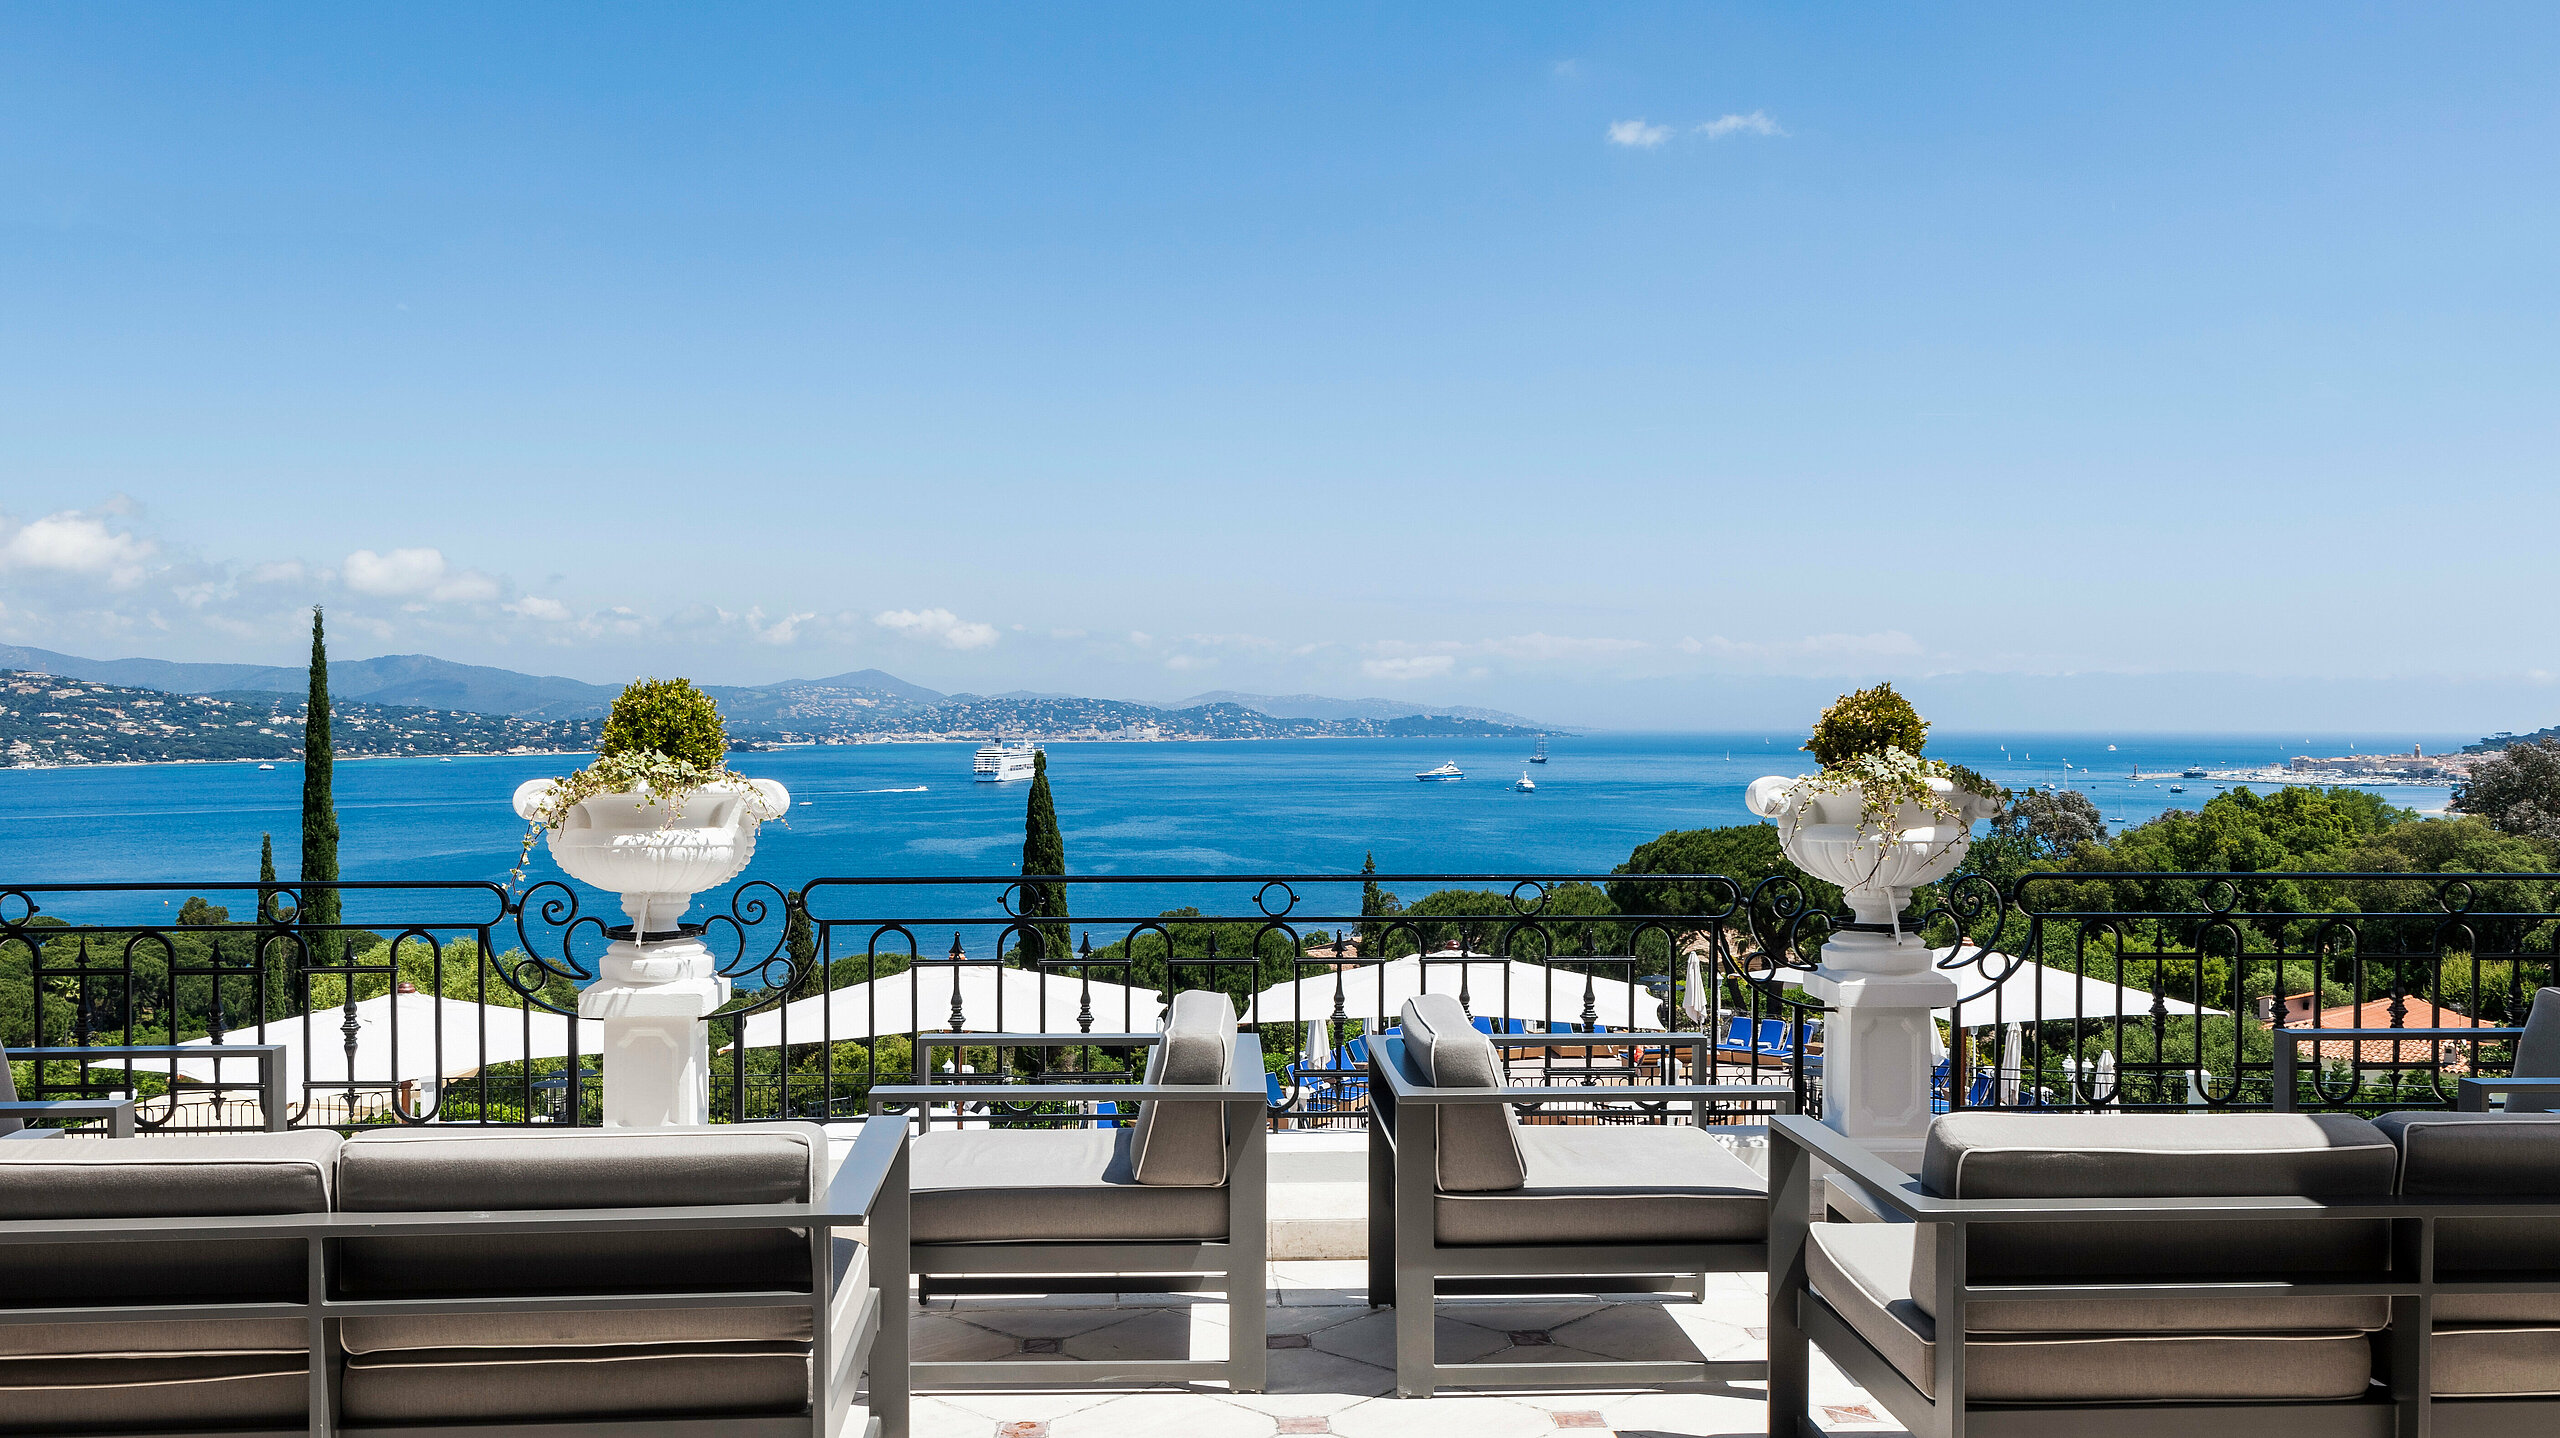 Althoff Villa Belrose in St. Tropez Aussenansicht mit Terrasse und Sitzmöglichkeiten mit Panorama Meerblick